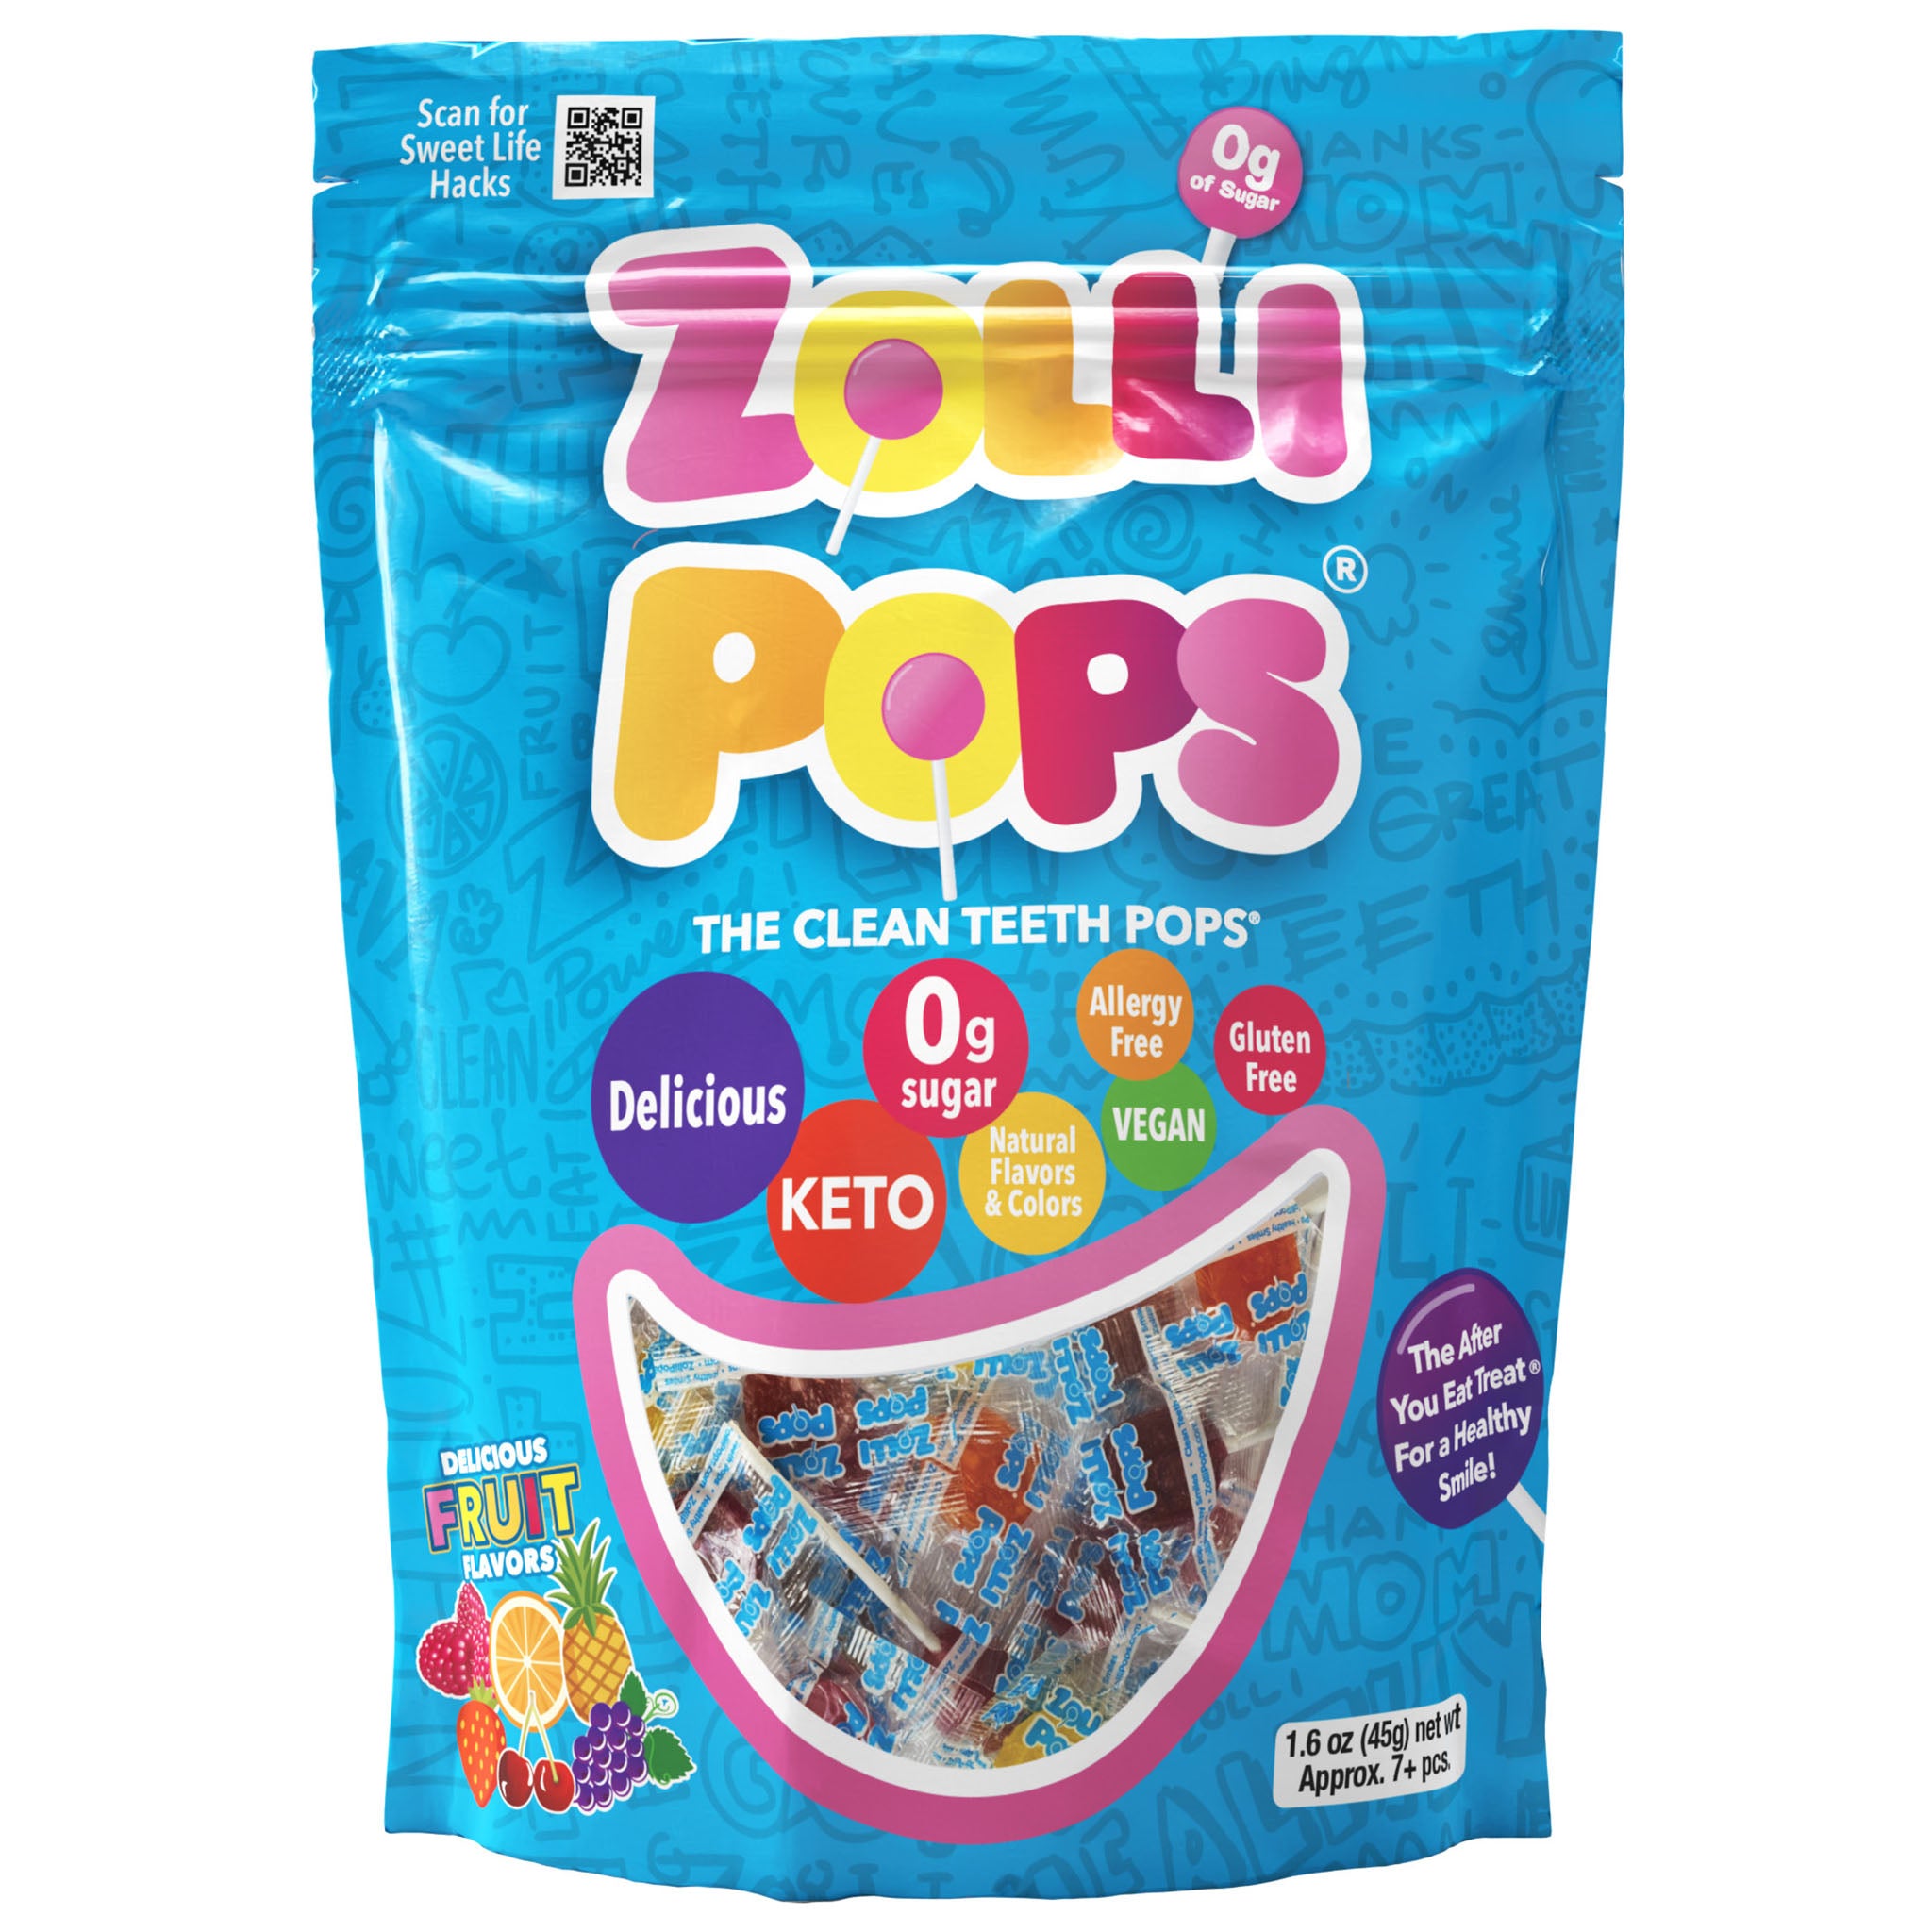 Zollipops the original Clean Teeth Lollipop in assorted fruit flavors